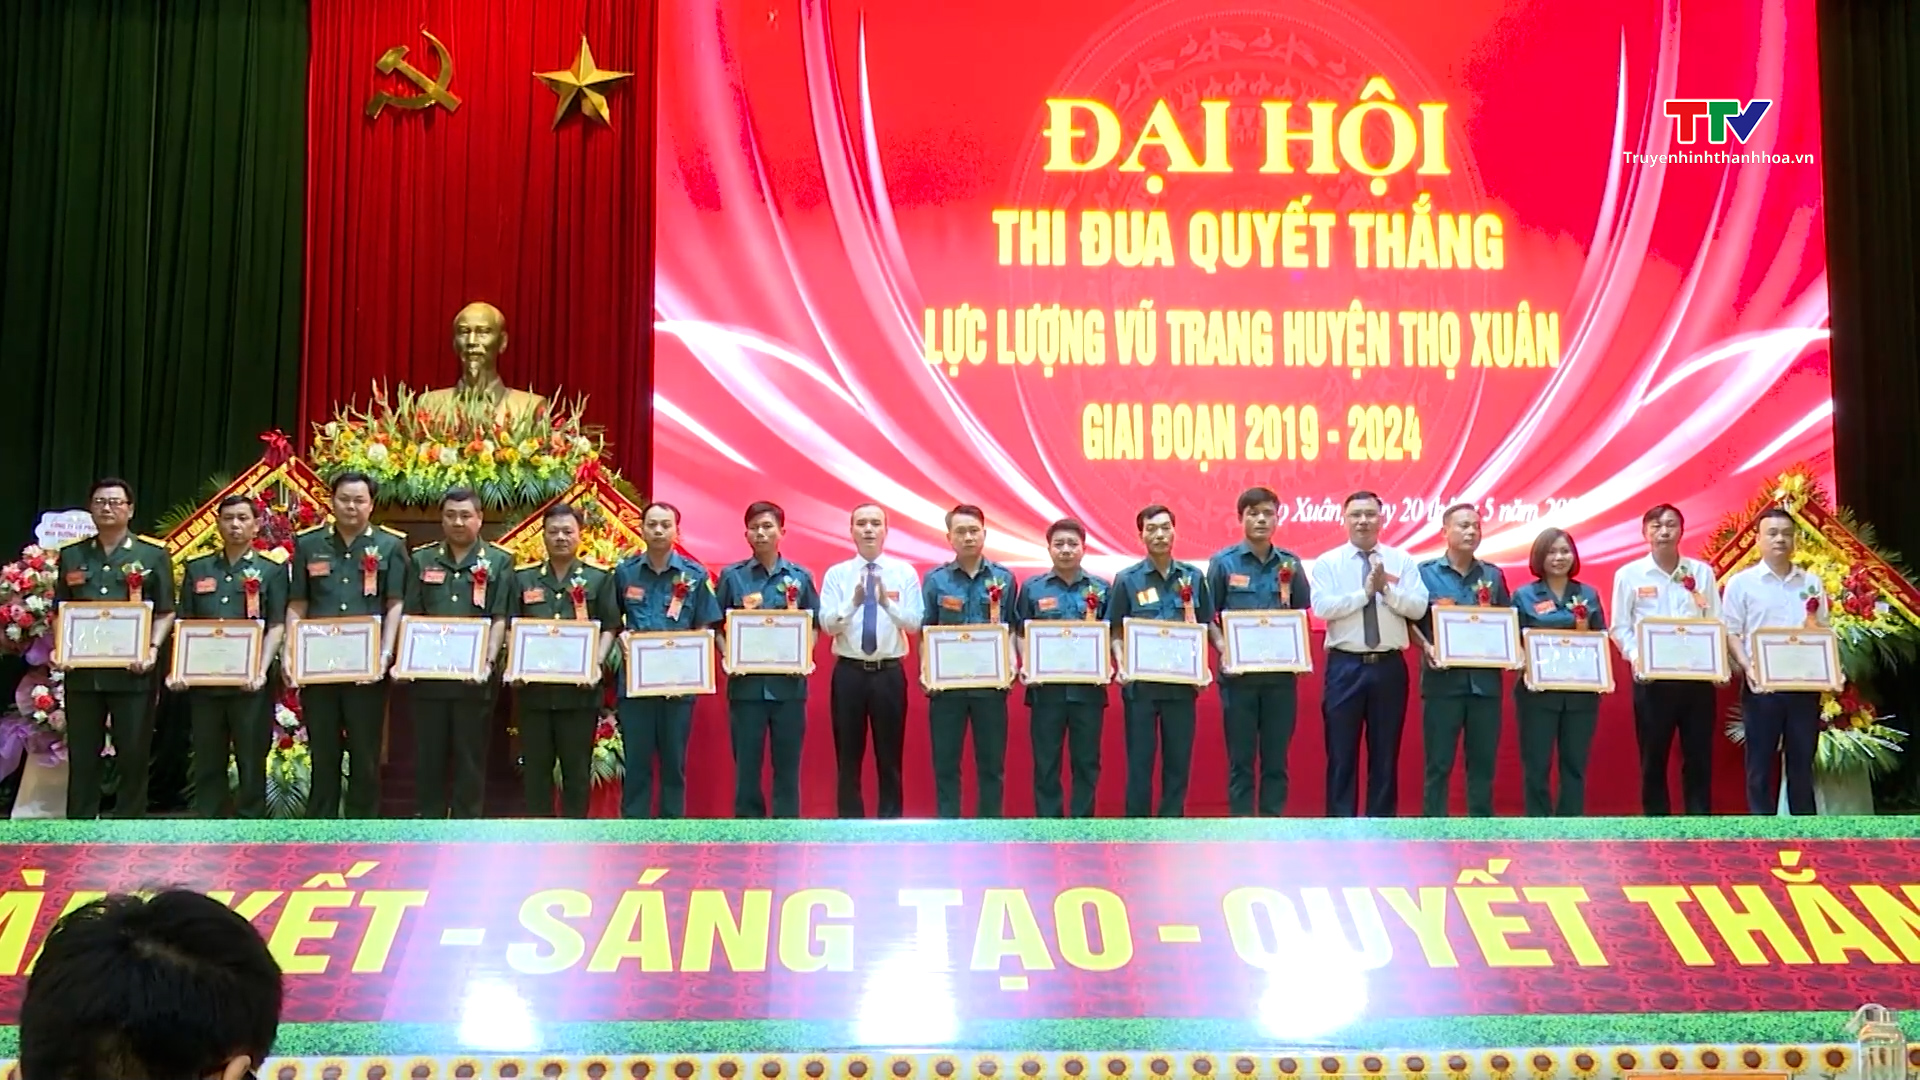 Đại hội Thi đua Quyết thắng lực lượng vũ trang huyện Thọ Xuân- Ảnh 1.